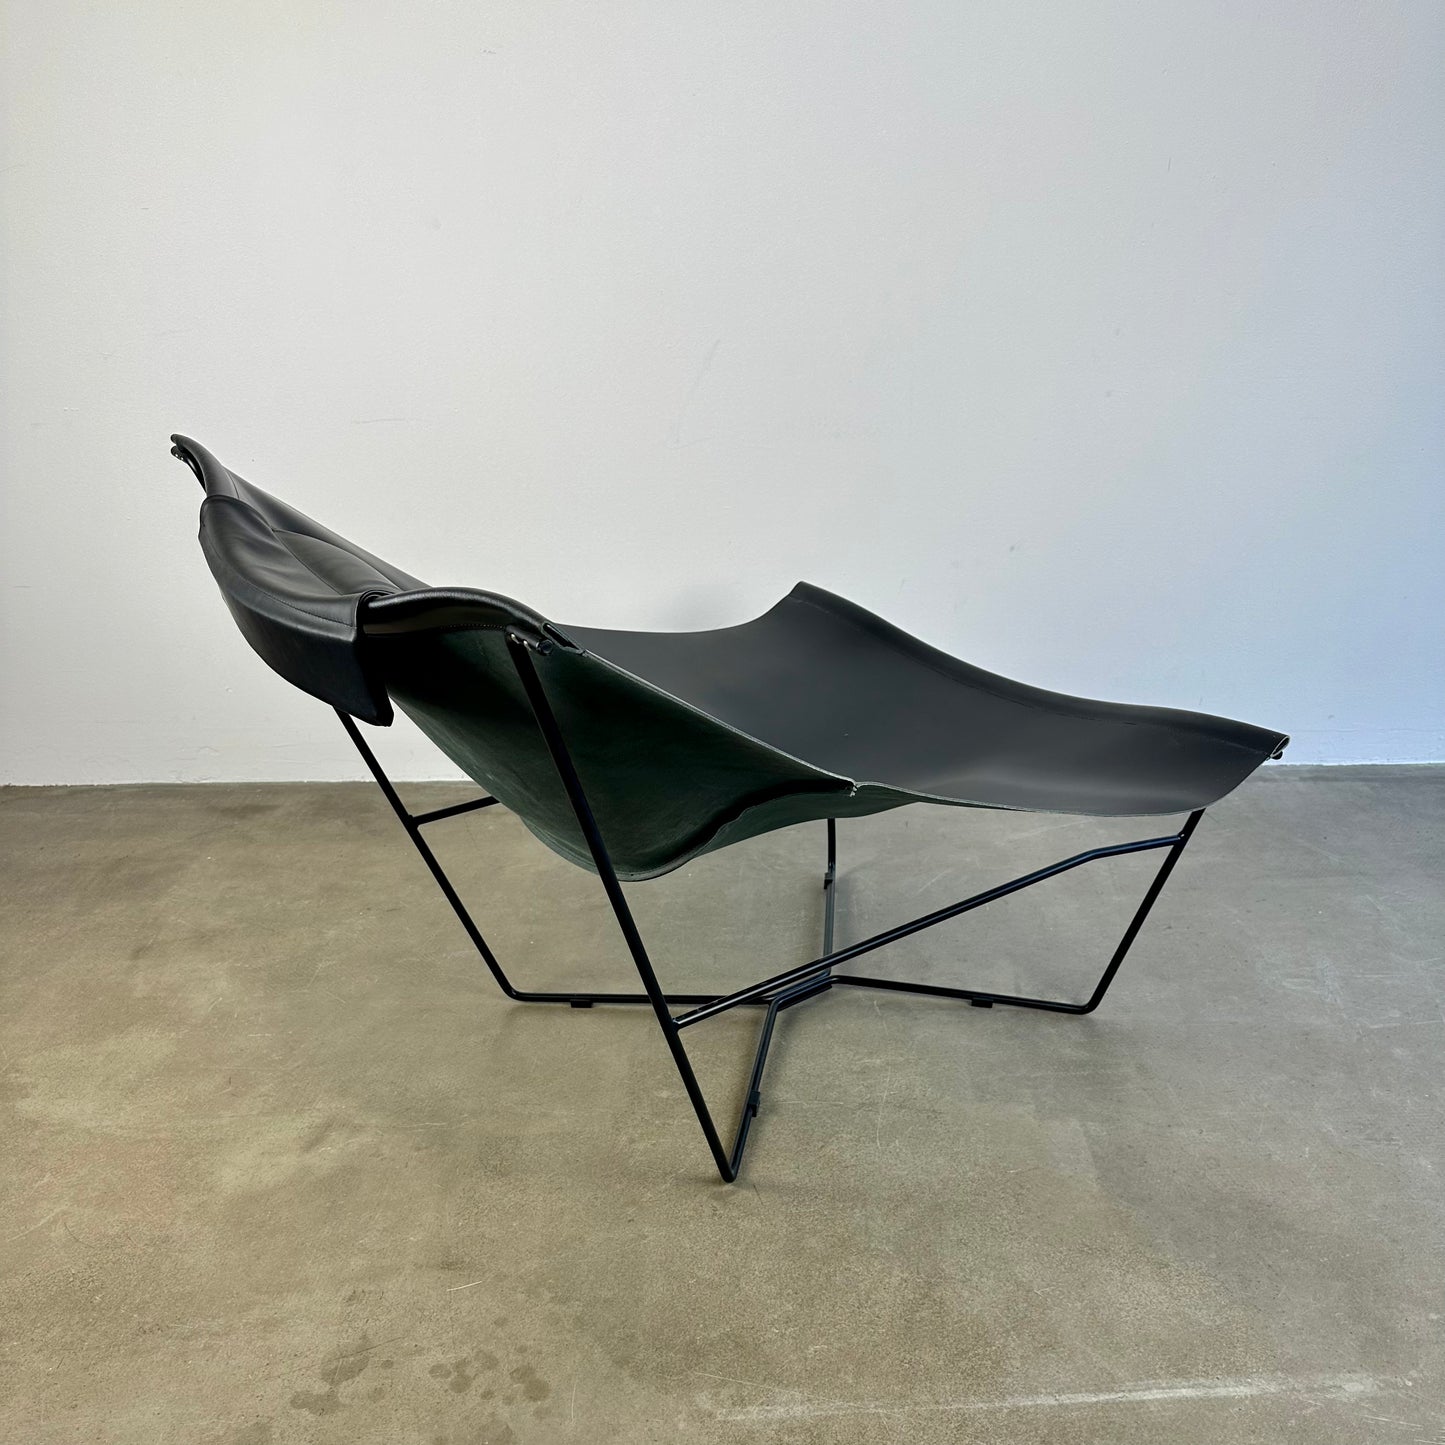 Semana lounge chair by David Weeks